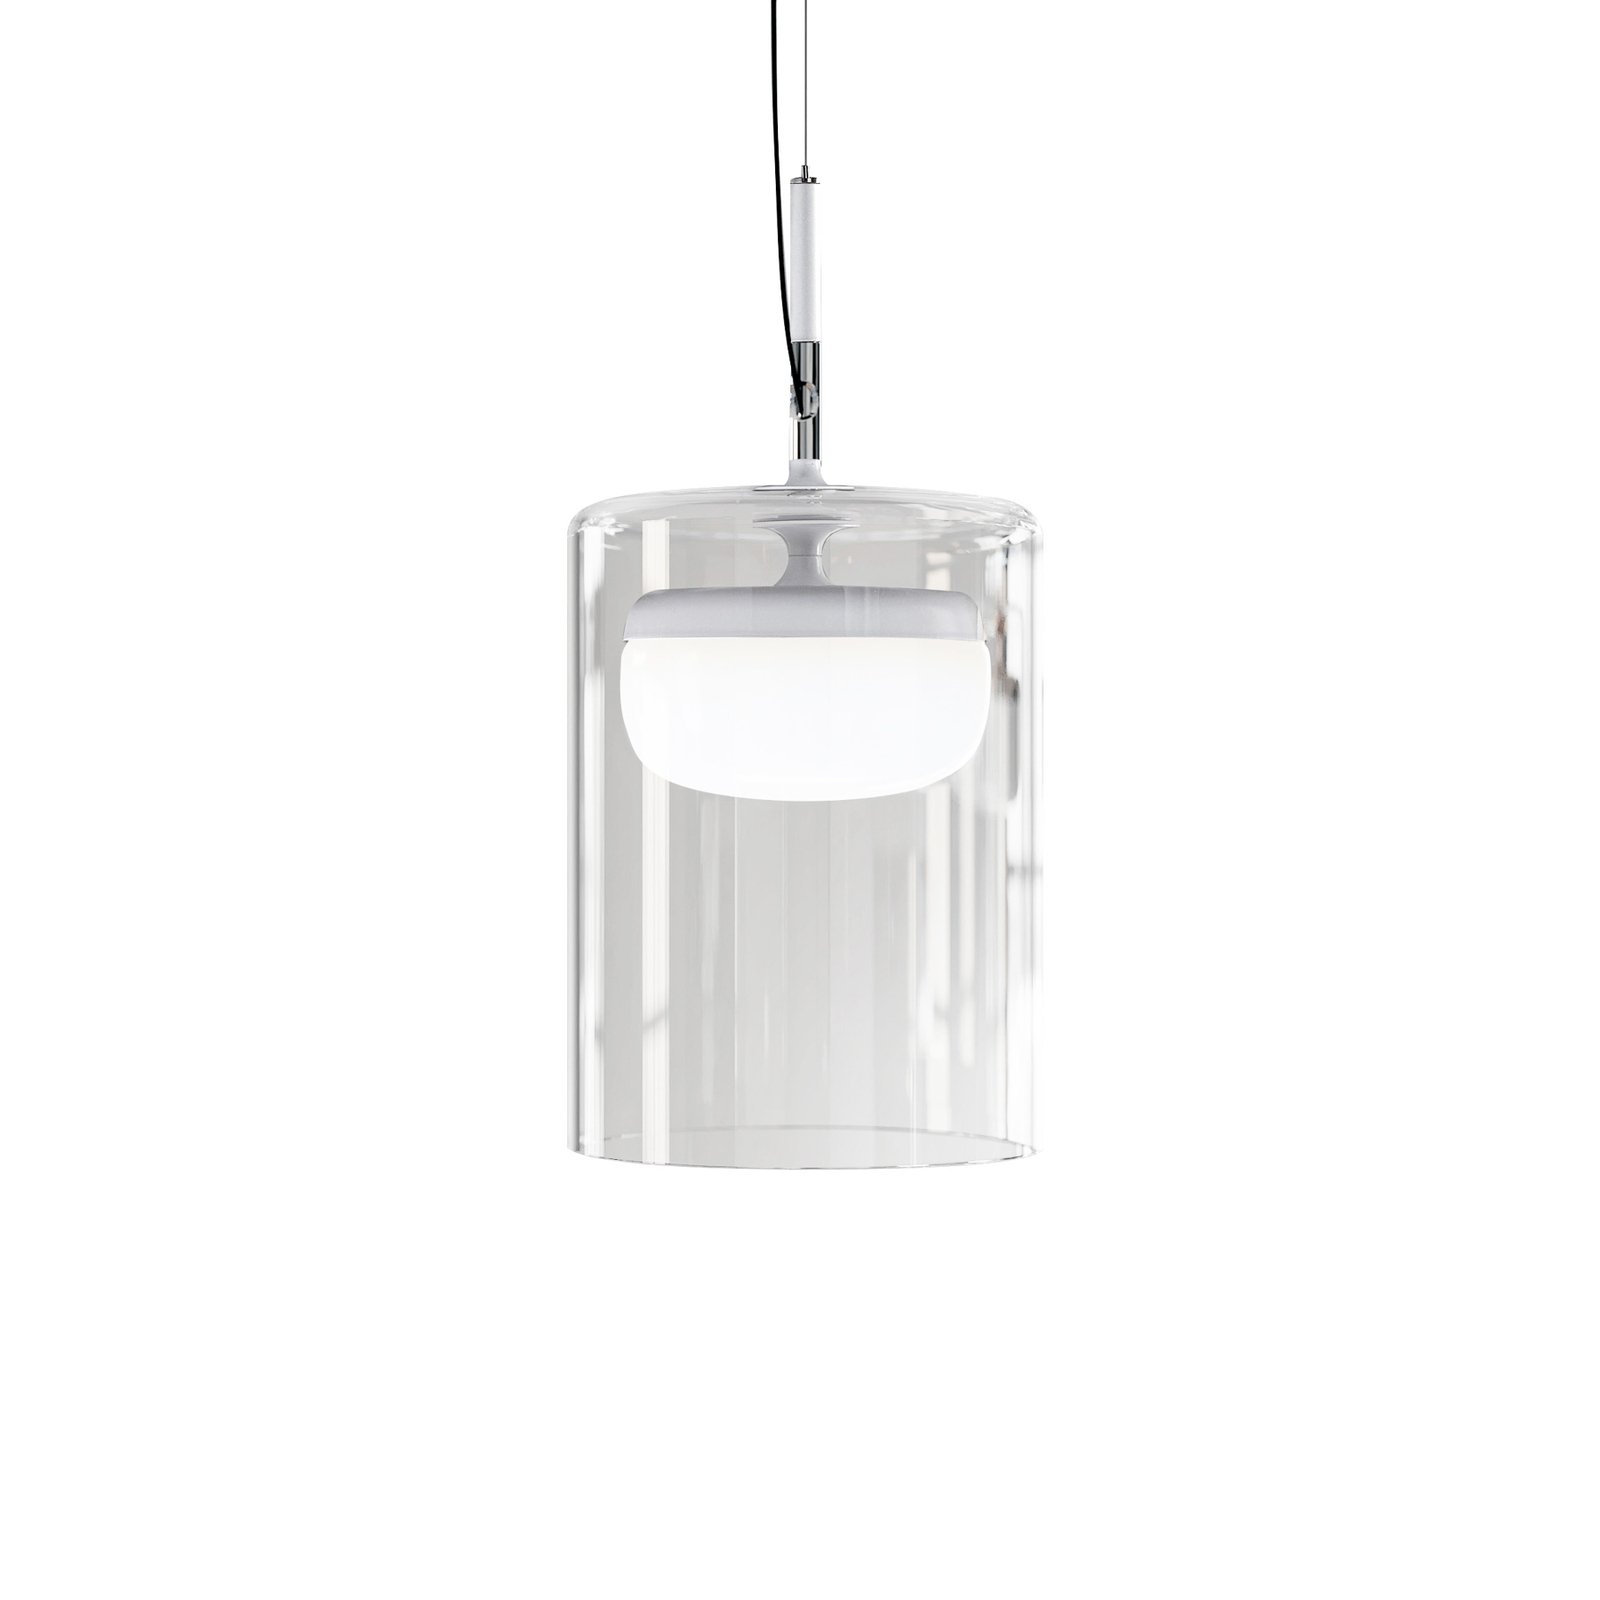 Prandina Diver lampa wisząca LED S1 2 700 K biała